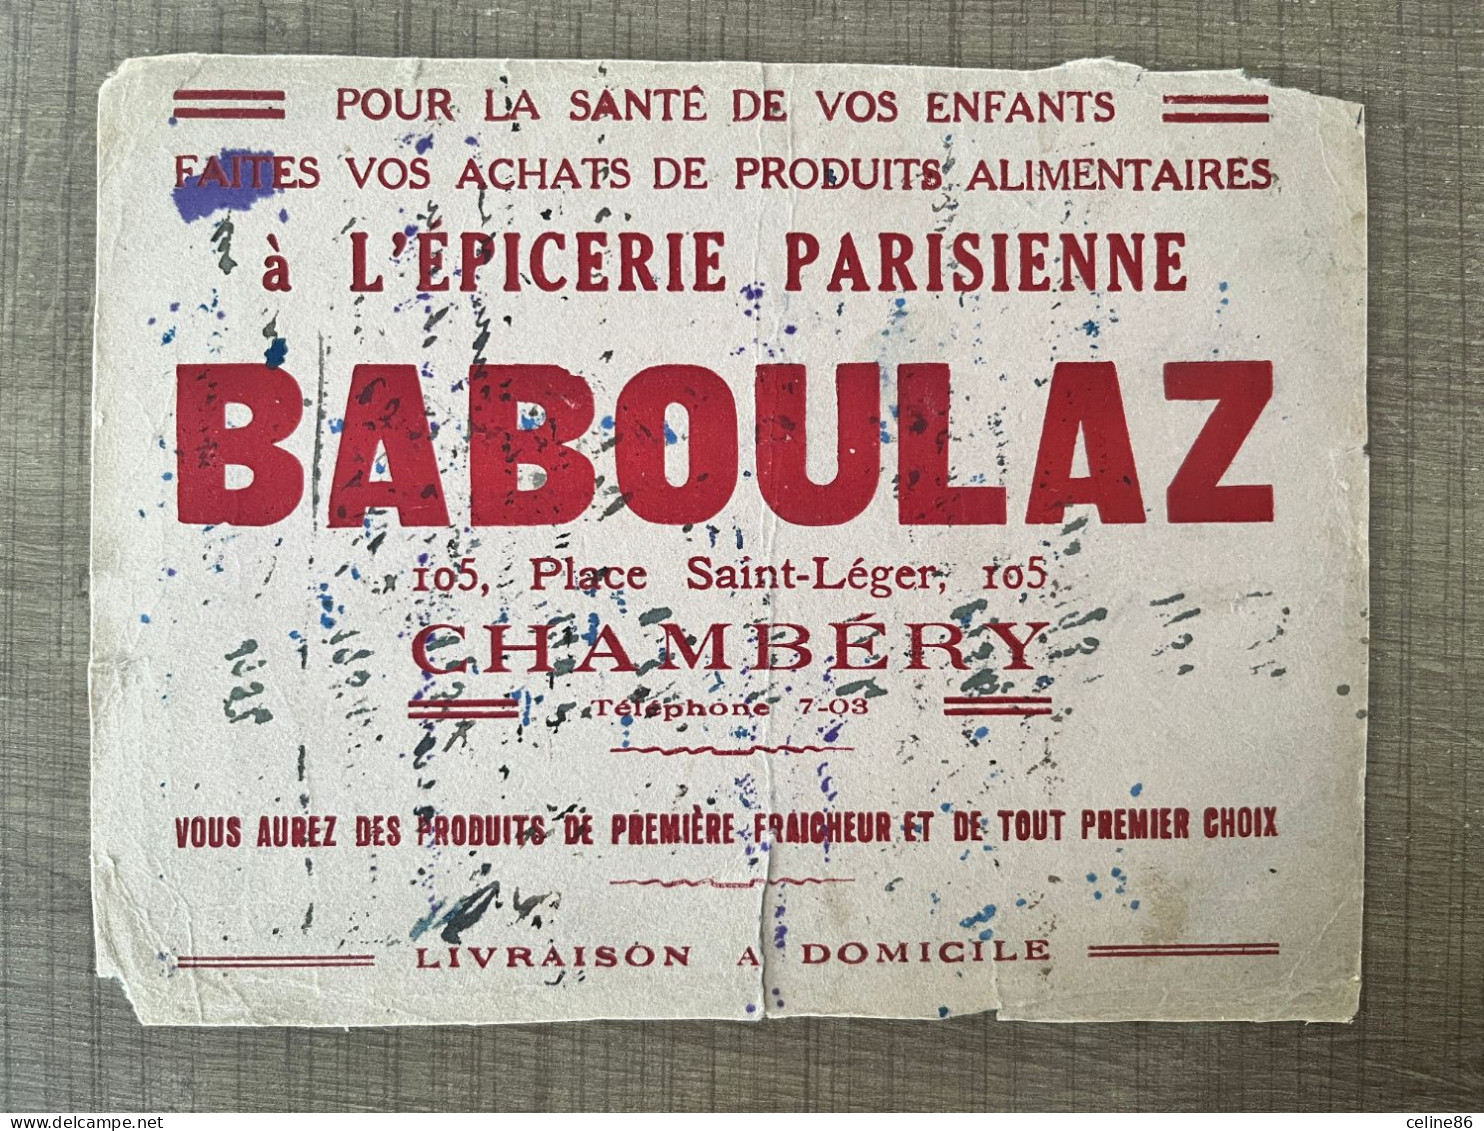 épicerie Parisienne BABOULAZ - Alimentare